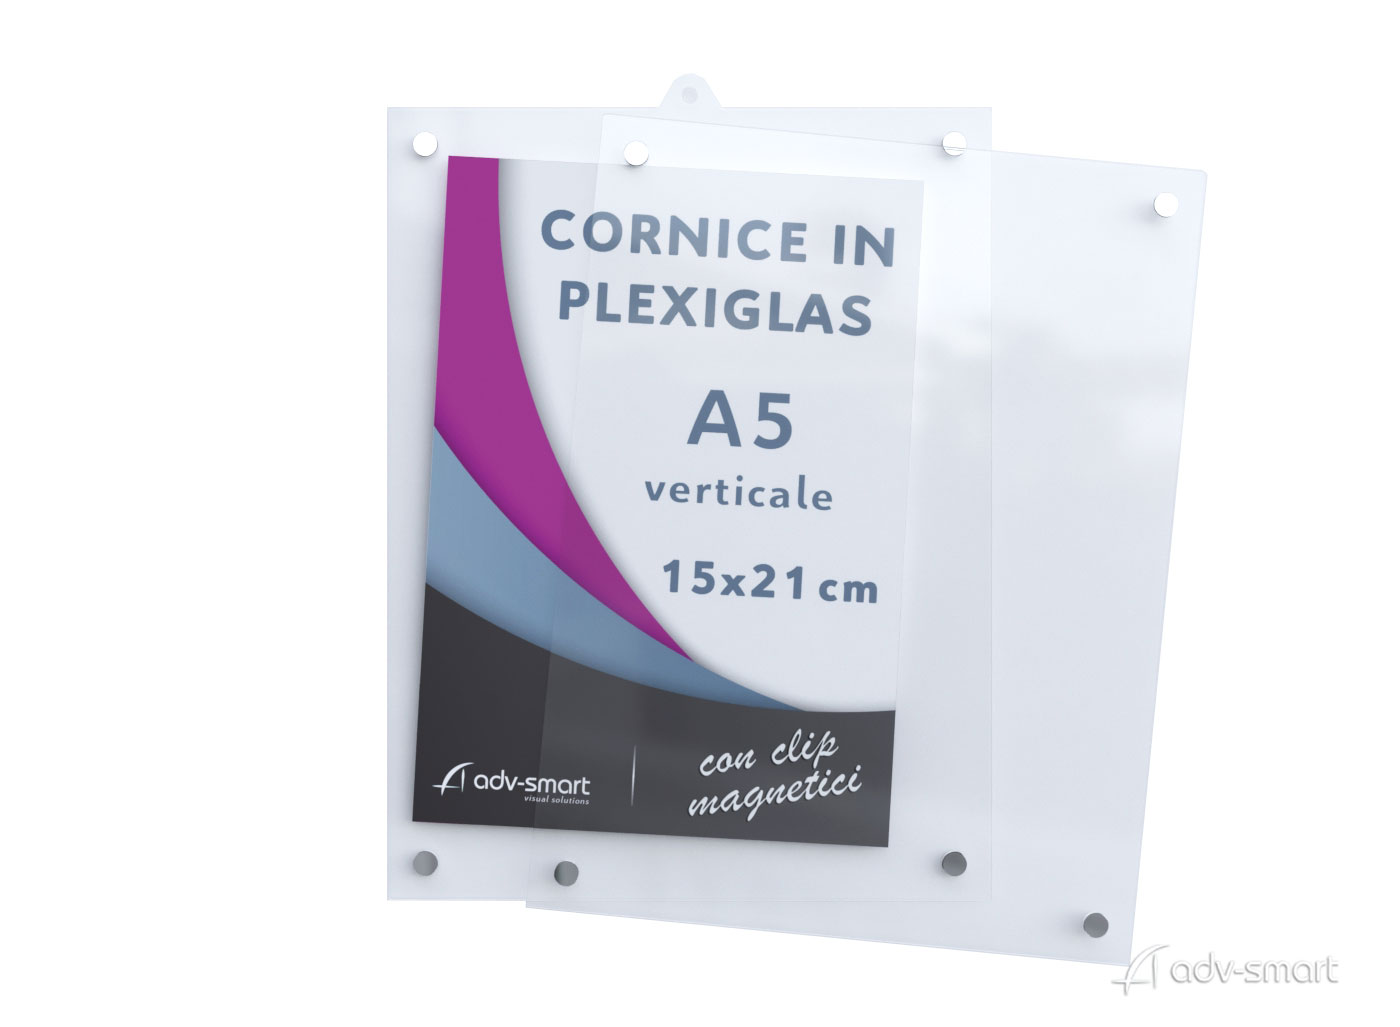 Cornice a Giorno 15x21 in Plexiglass Trasparente A5 Verticale - ADV-smart